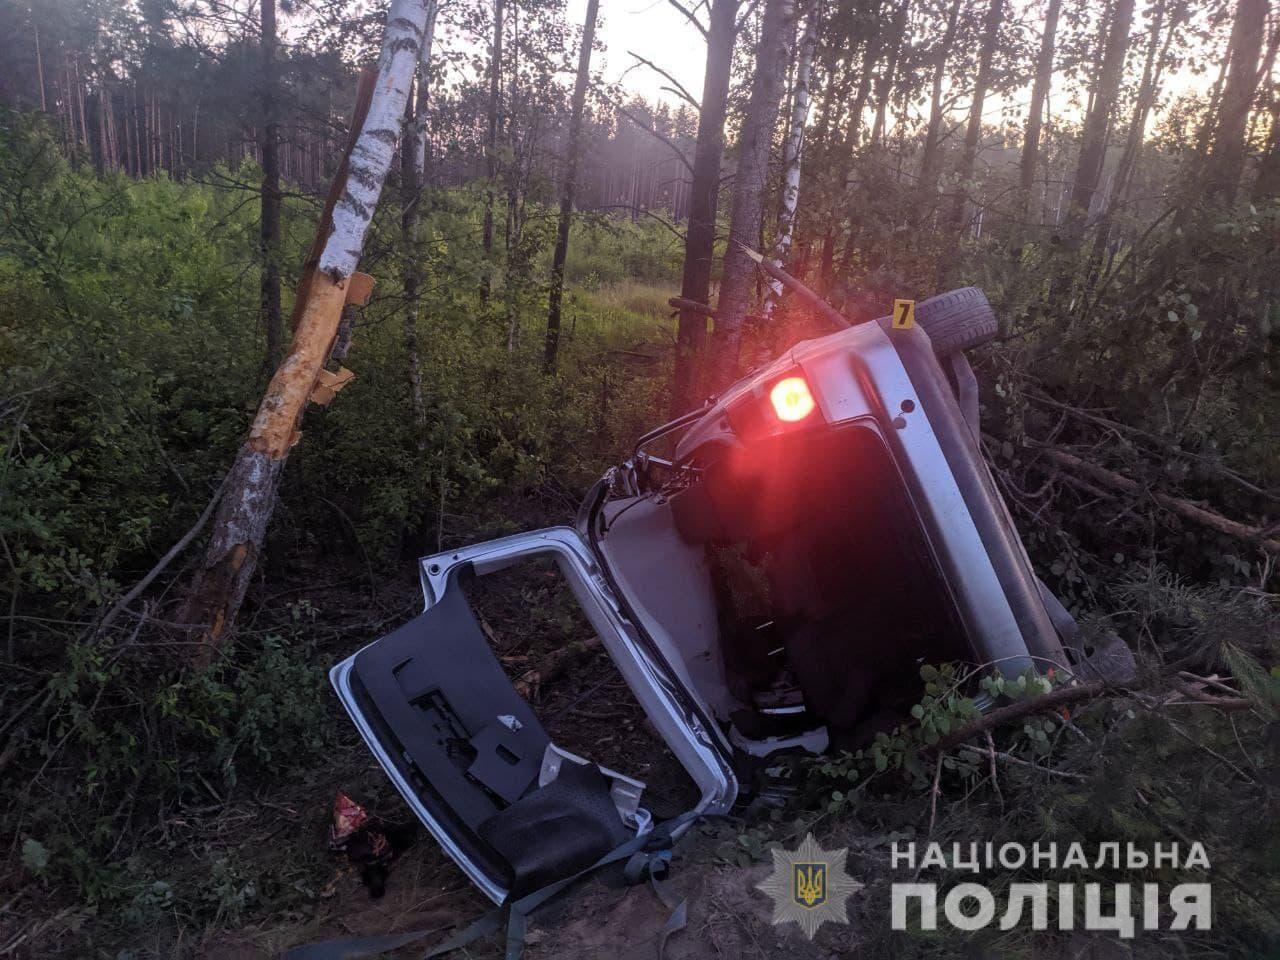 Нетрезвому водителю, совершившему смертельное ДТП в Ровненской области, вынесли суровый приговор